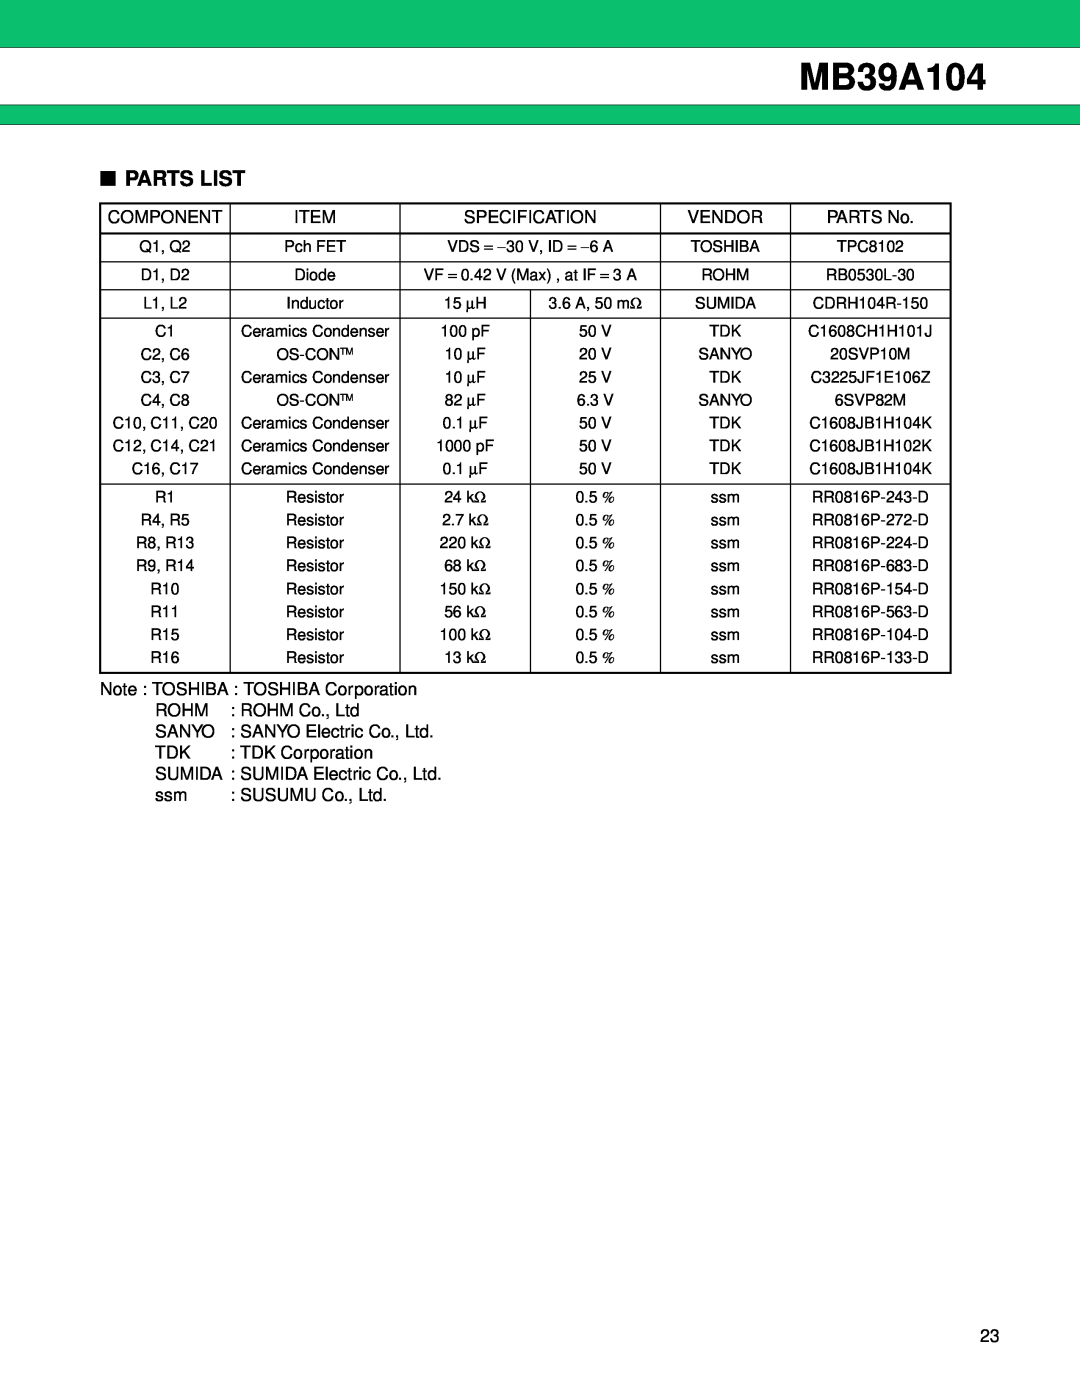 Fujitsu MB39A104 manual Parts List 